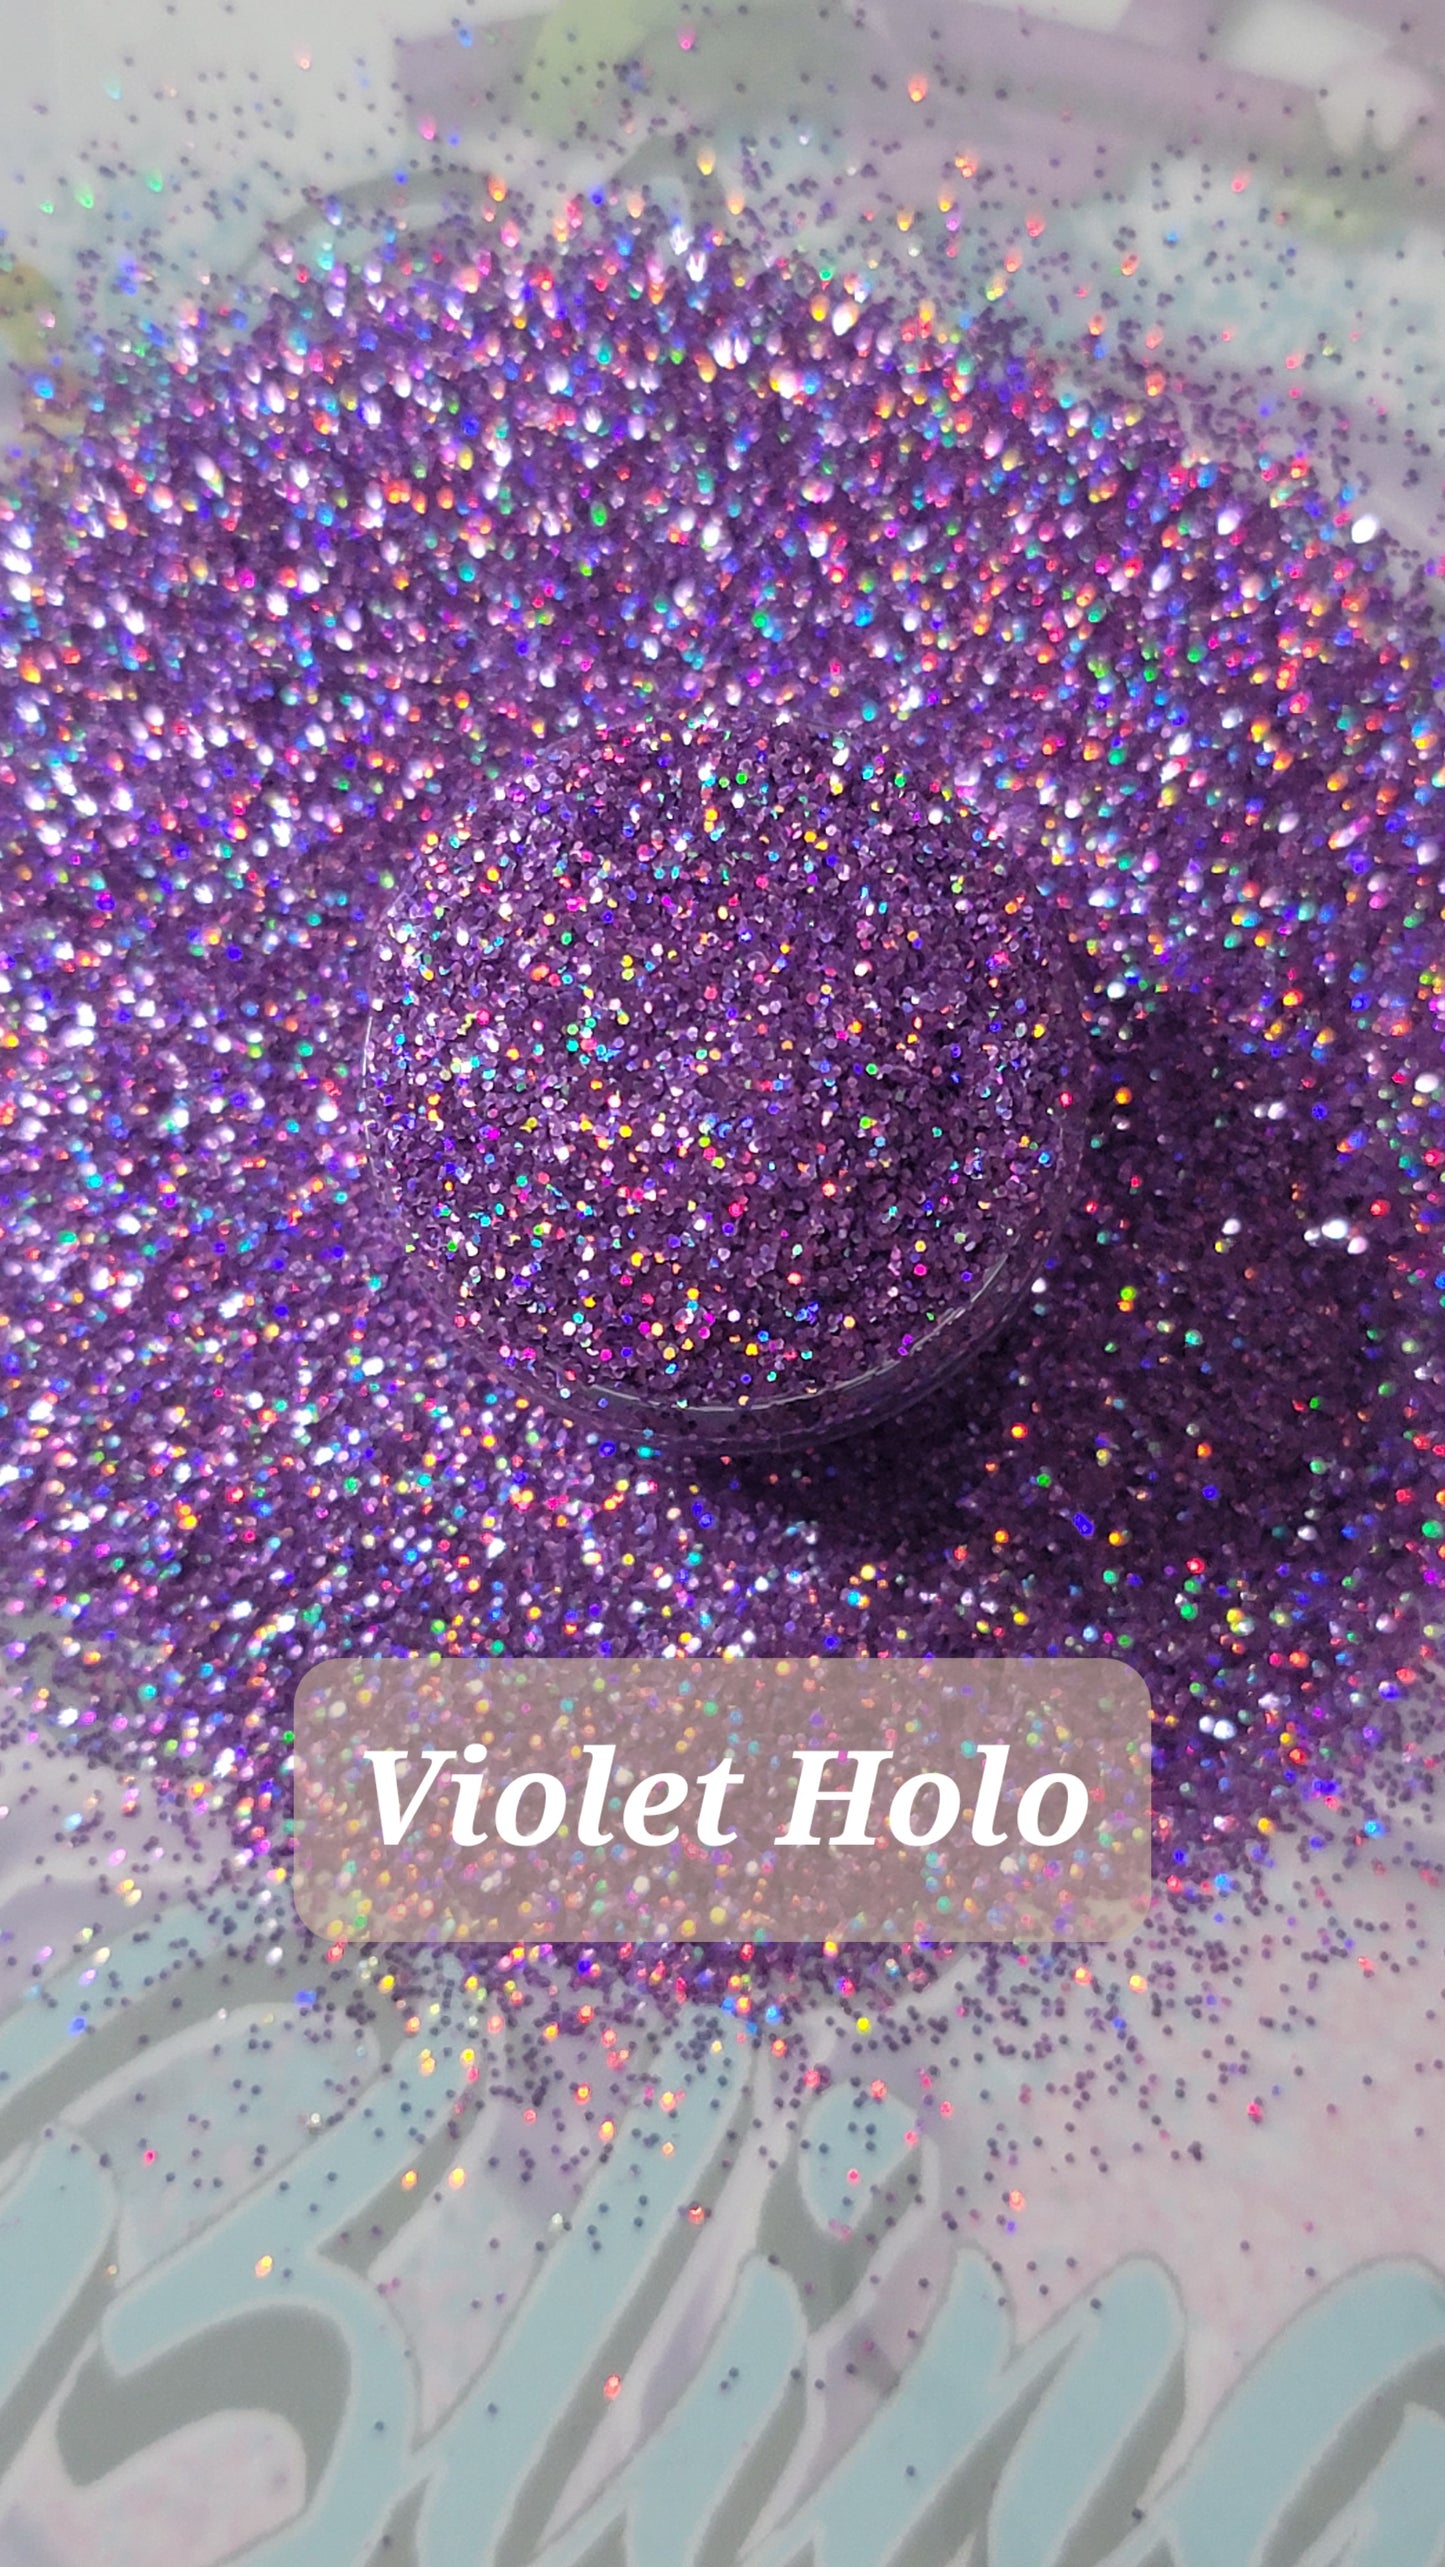 Violet Holo